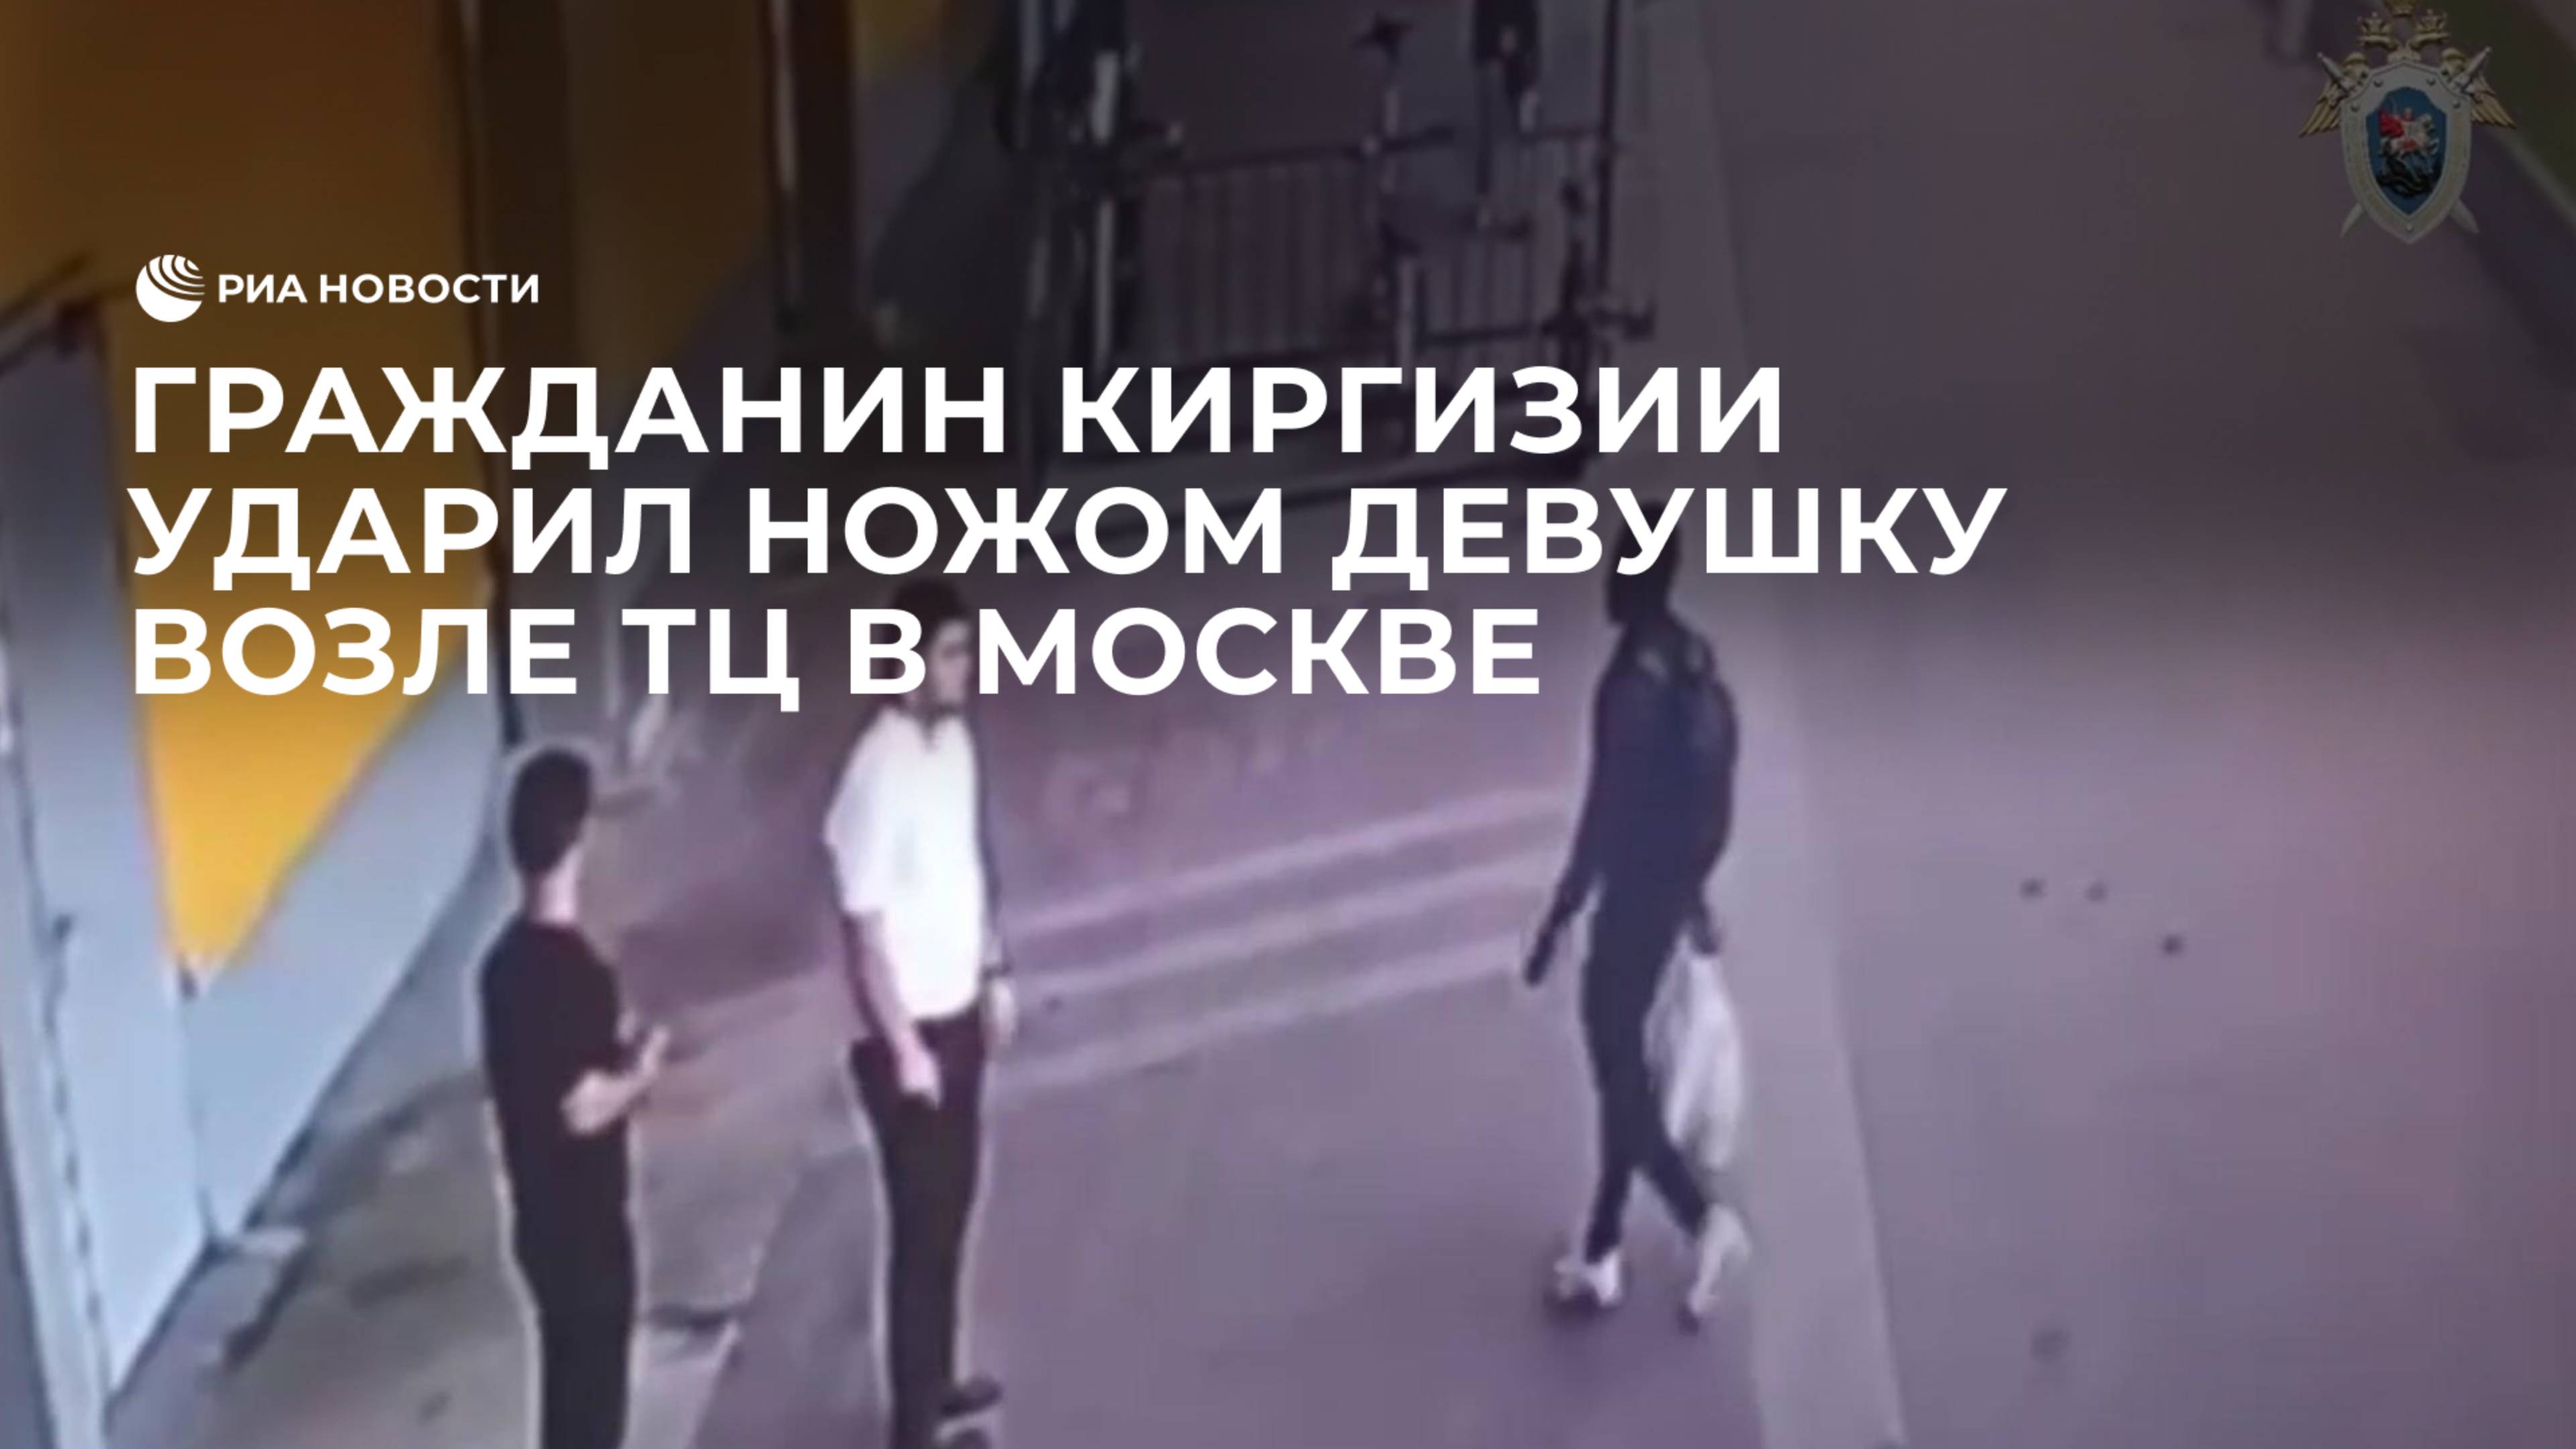 Гражданин Киргизии ударил ножом девушку возле ТЦ в Москве